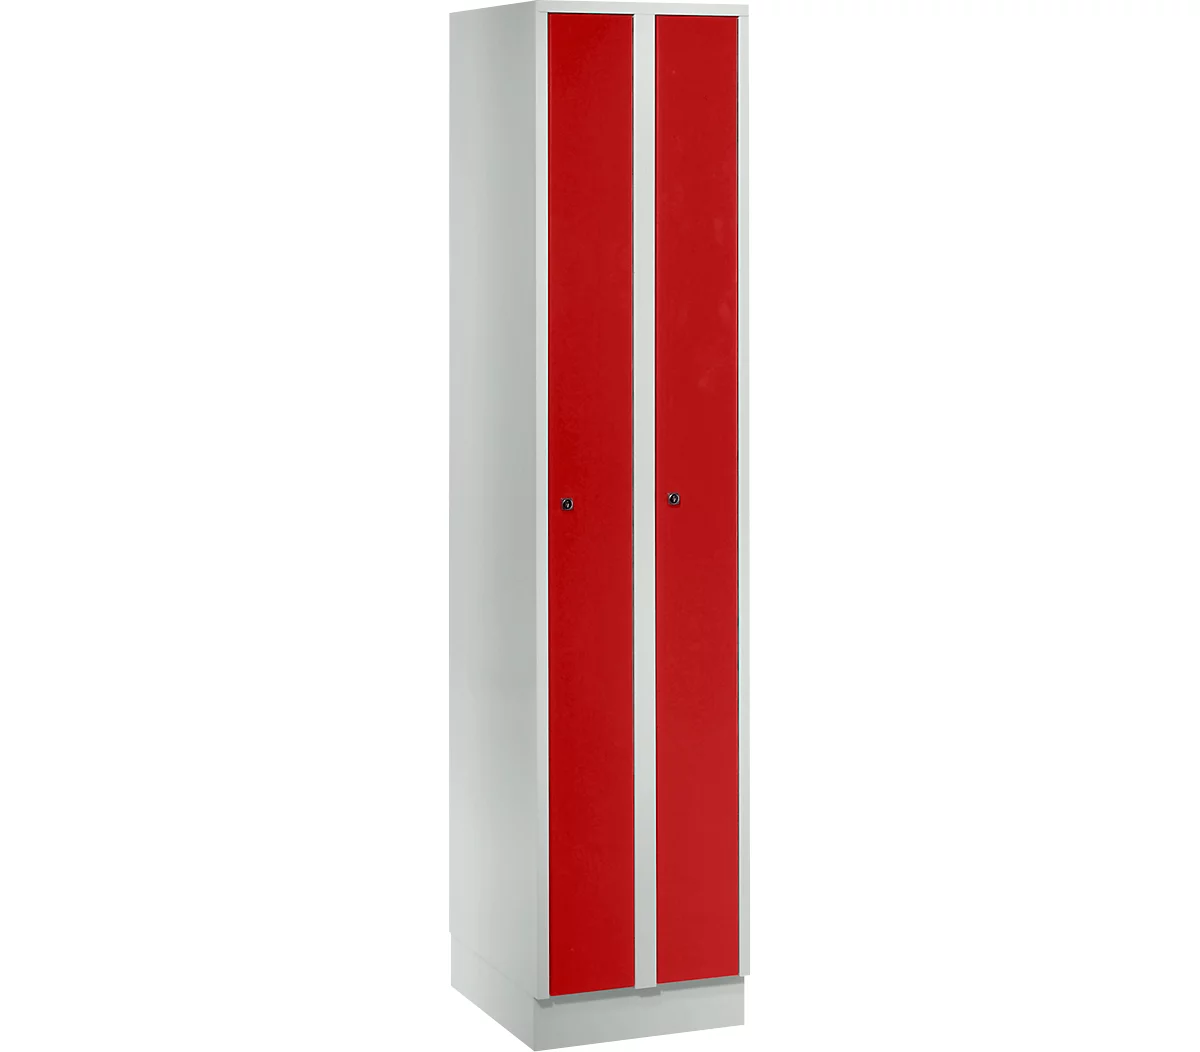 Taquilla que ahorra espacio, anchura del compartimento 200 mm, con cerradura, 2 compartimentos, rojo